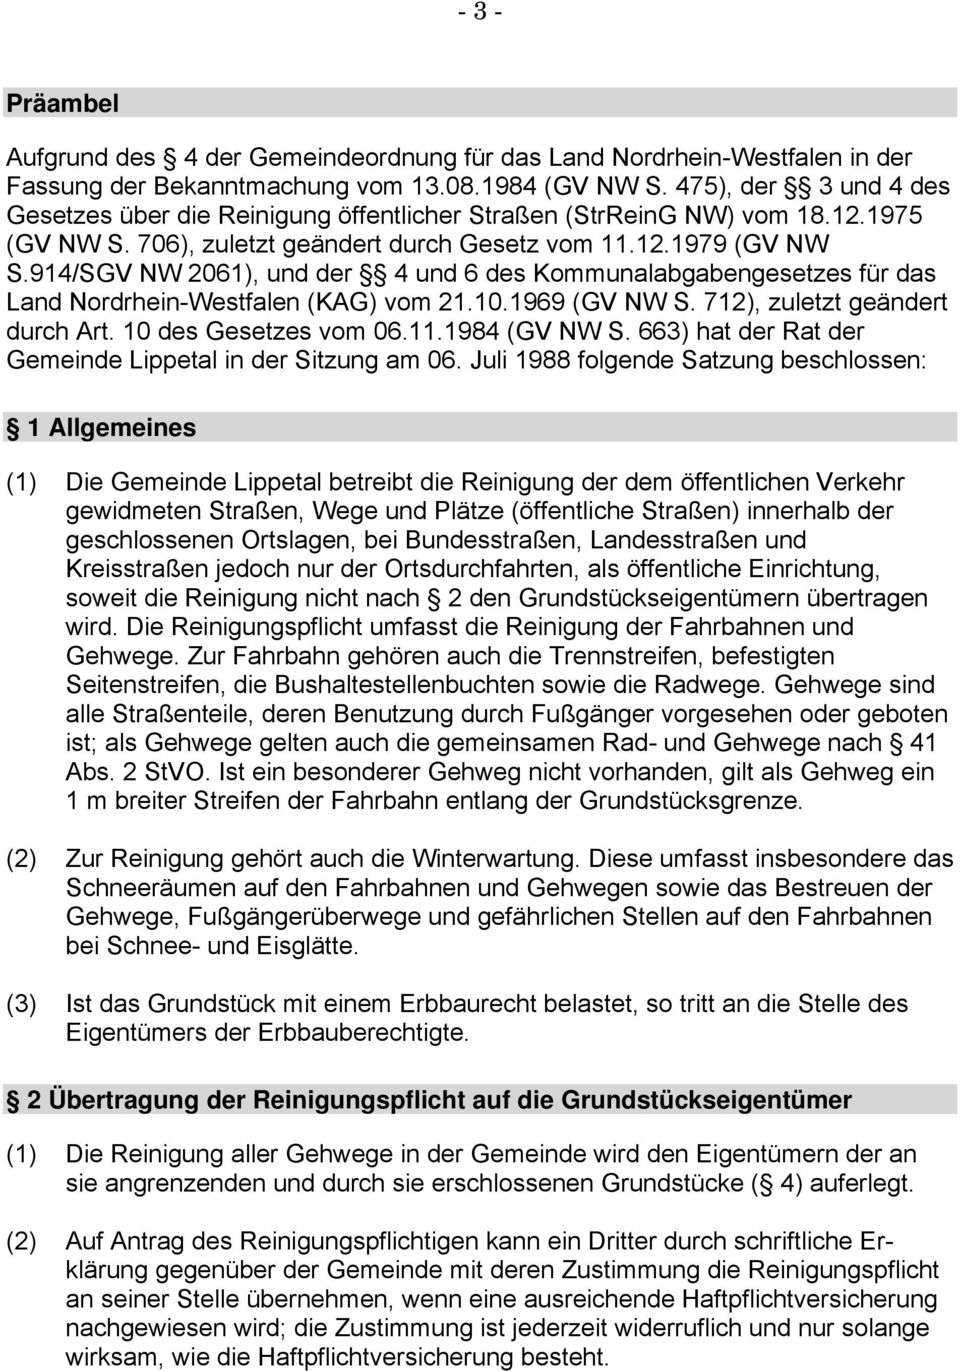 914/SGV NW 2061), und der 4 und 6 des Kommunalabgabengesetzes für das Land Nordrhein-Westfalen (KAG) vom 21.10.1969 (GV NW S. 712), zuletzt geändert durch Art. 10 des Gesetzes vom 06.11.1984 (GV NW S.